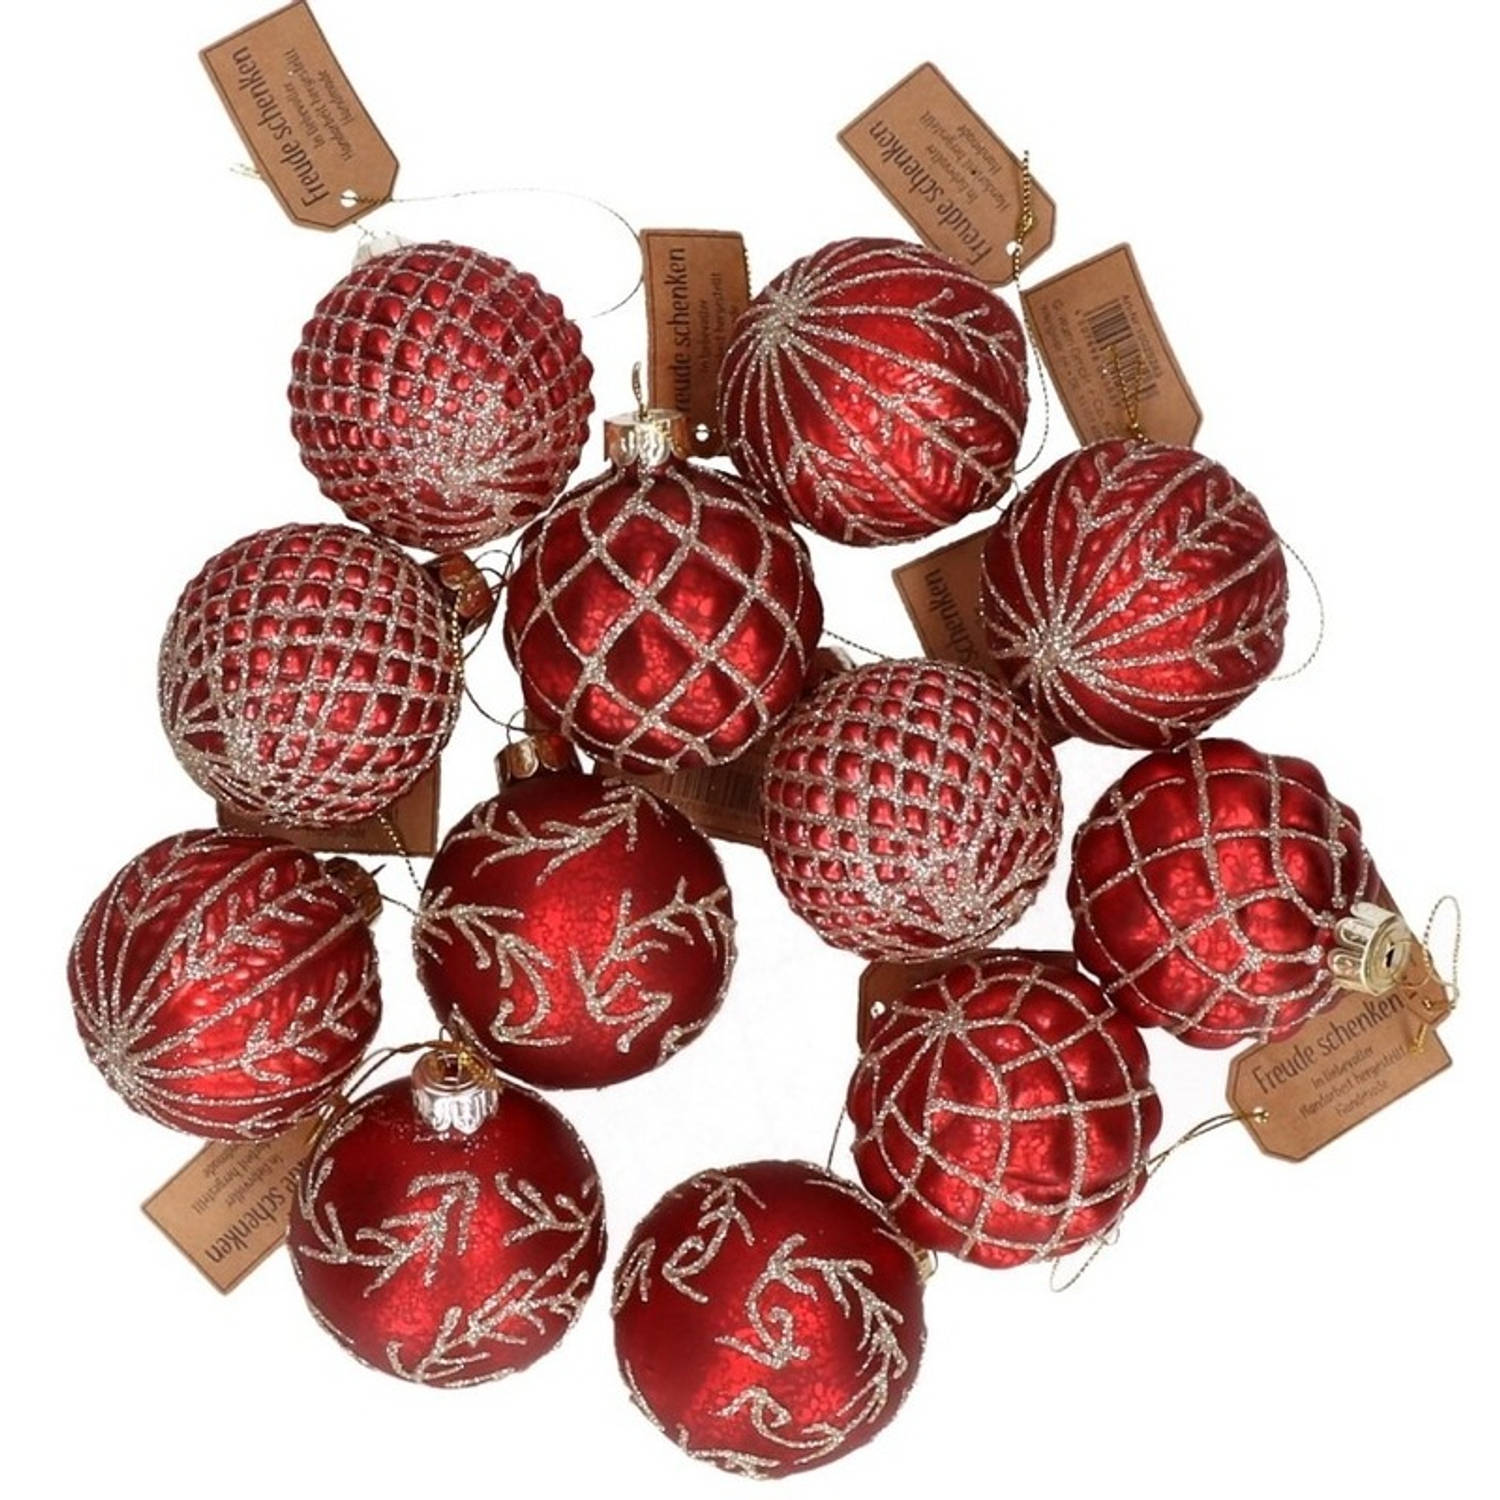 12x Rode glazen kerstballen met gouden decoratie 6 cm Kerstboom versiering-decoratie Kerstballen gla